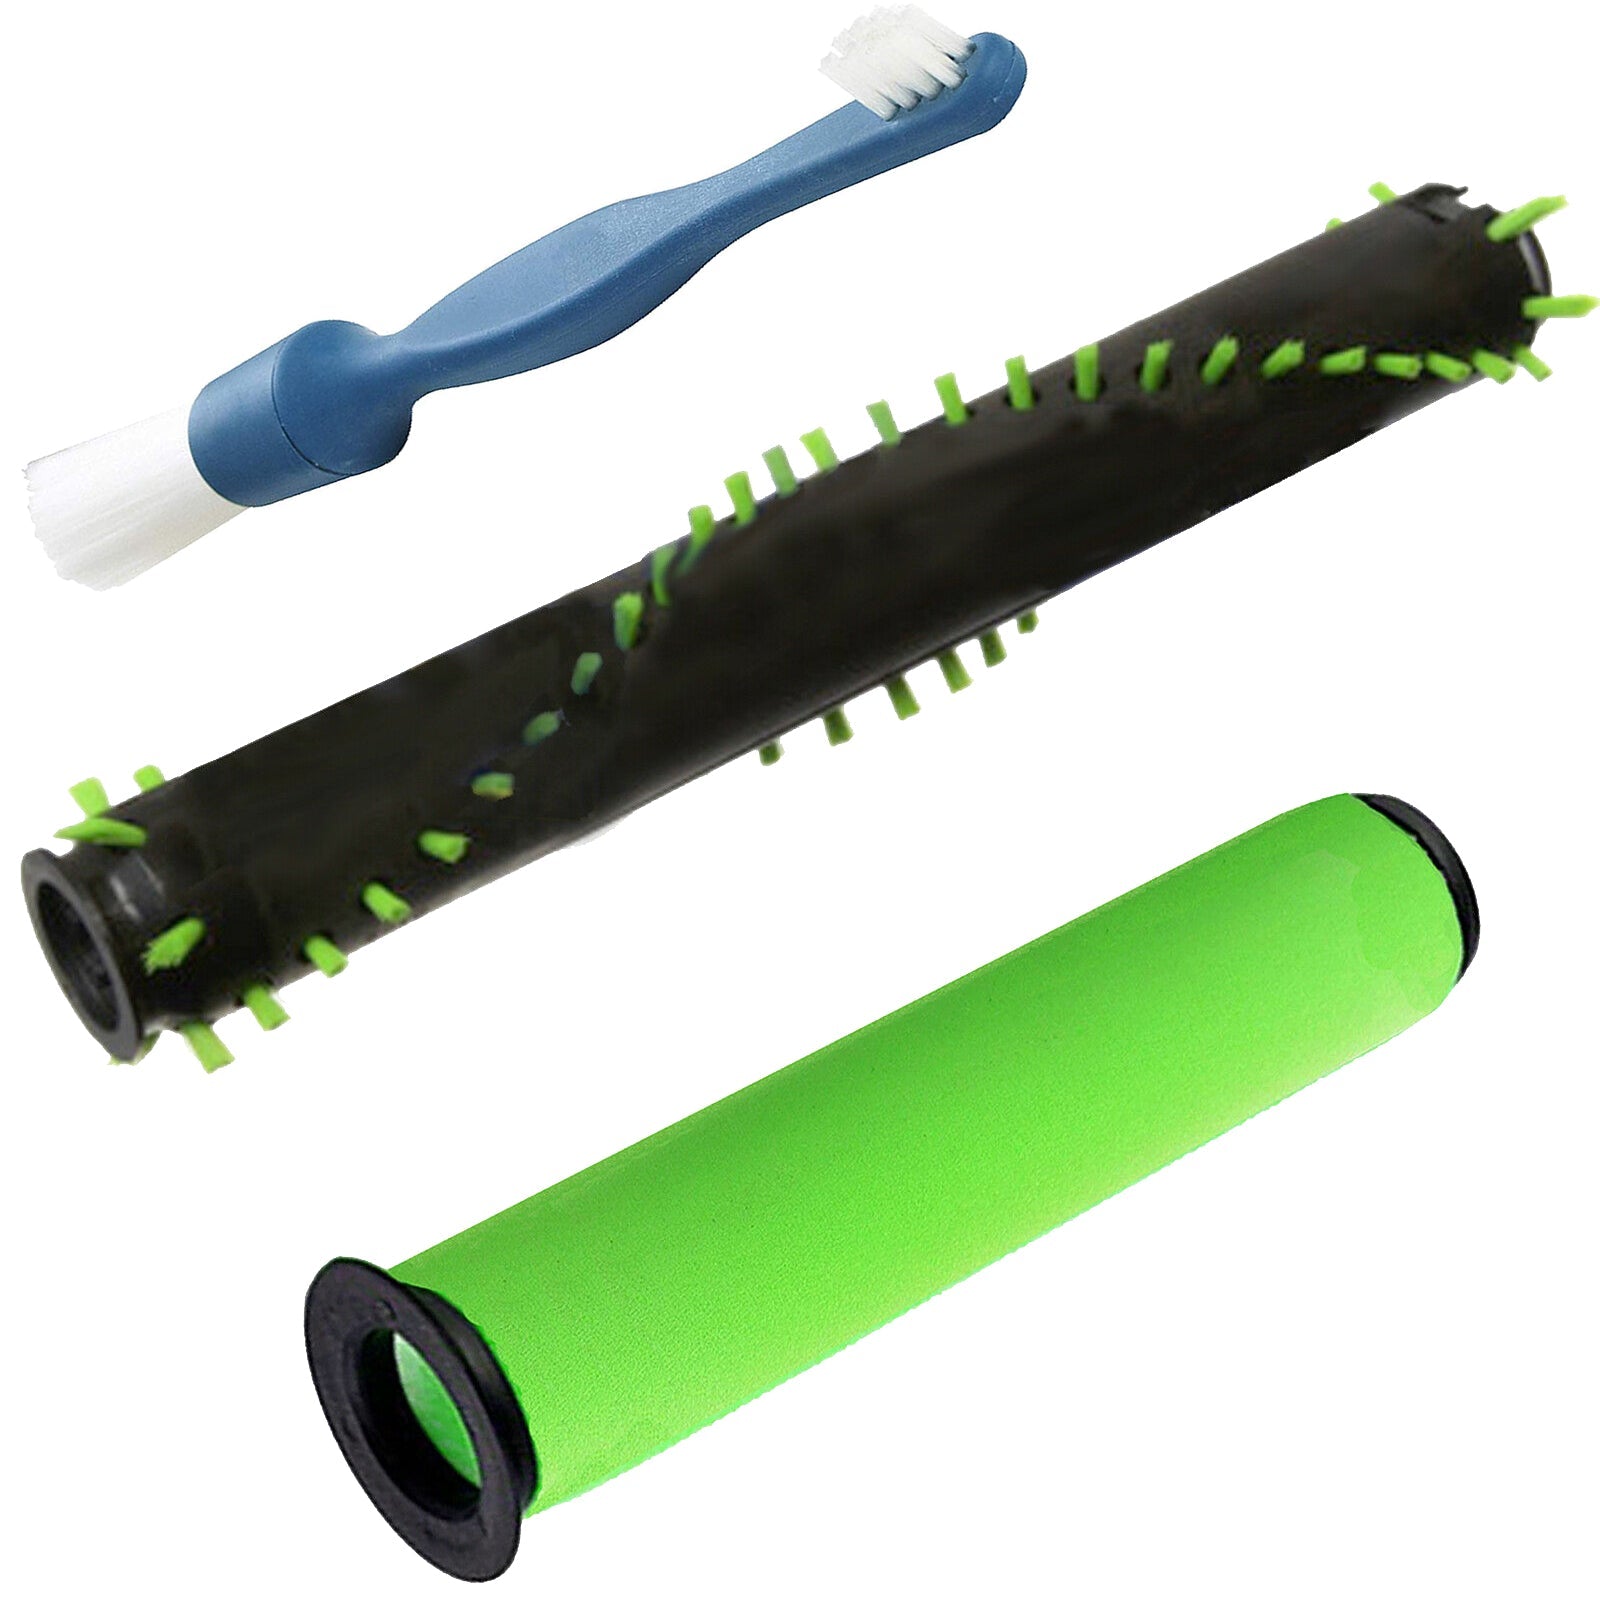 Brushroll + Washable Filter + Brush for GTECH AIRRAM MK2 K9 Cordless Vacuum Cleaner